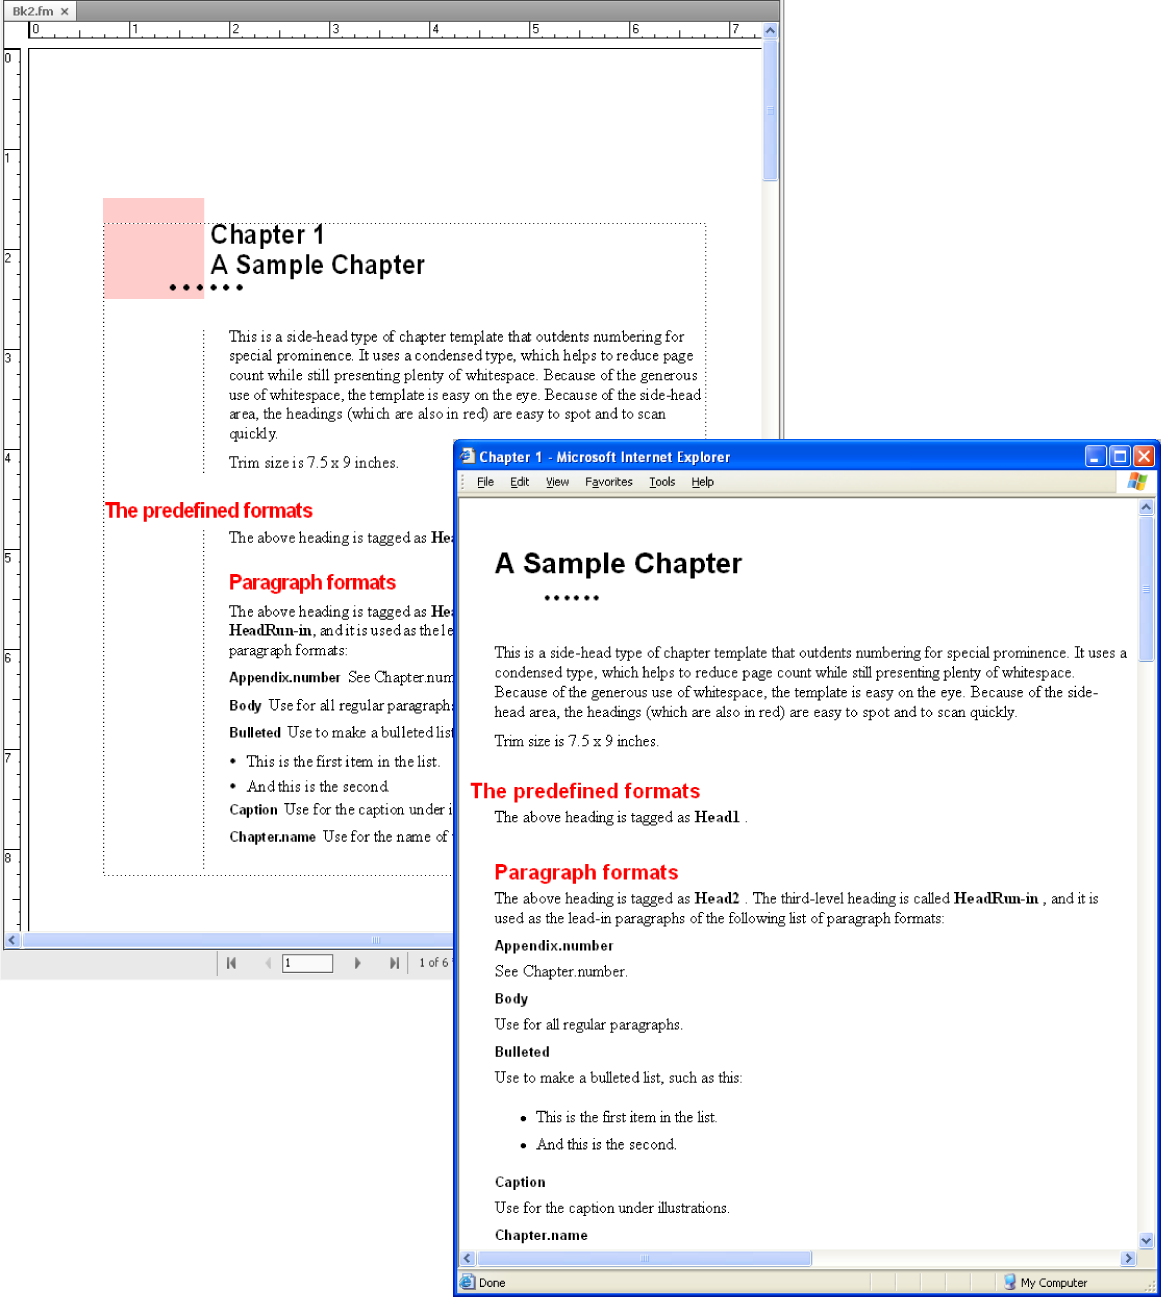 Exemple de modèle de chapitre FrameMaker fourni avant et après la conversion HTML.